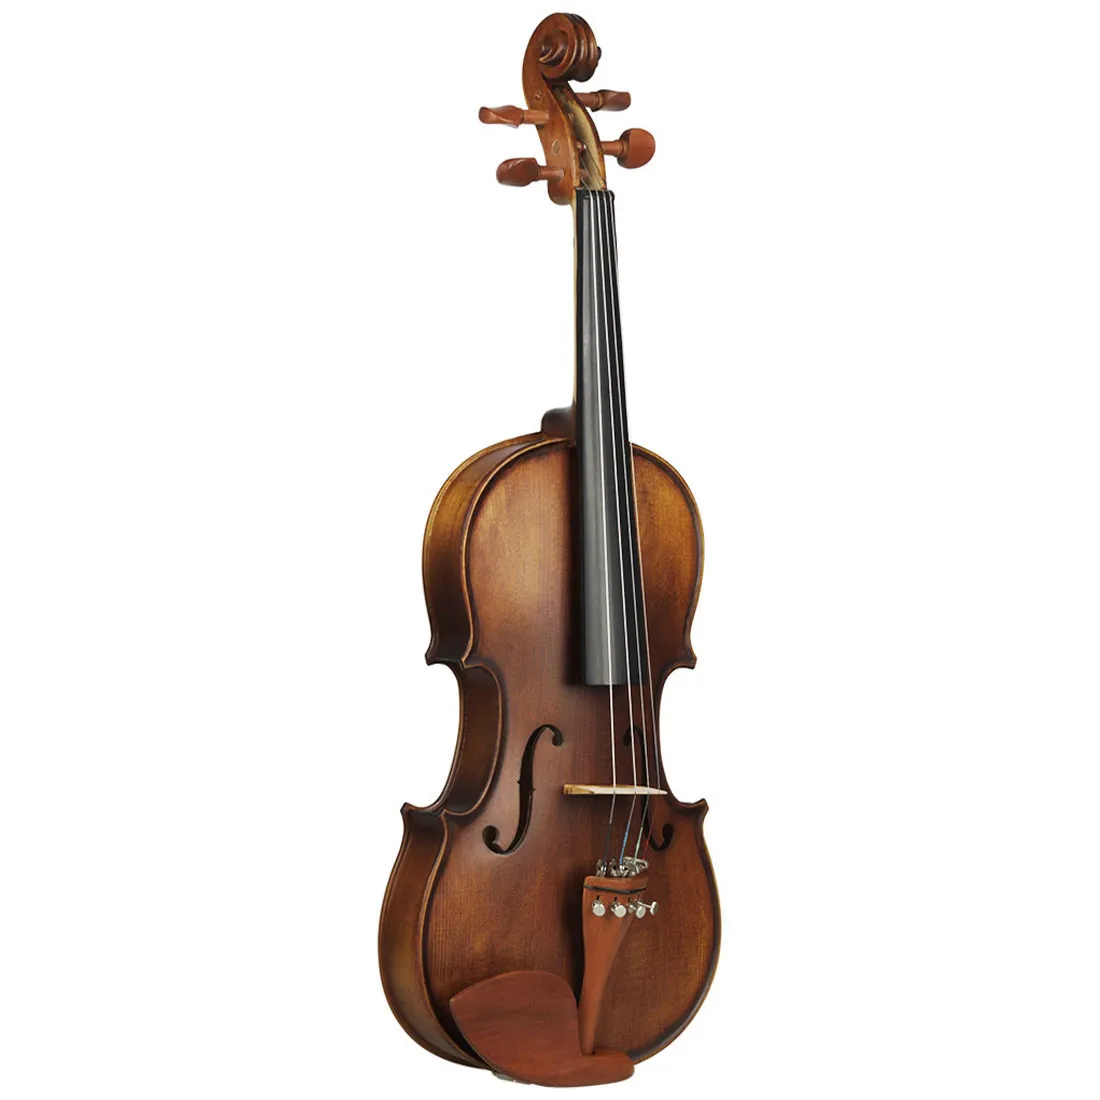 ハイエンドバイオリンピュアハンドメイドアンティークバイオリン4/4フルレンジのジュジュベウッドプロフェッショナルバイオリン4/4演奏楽器